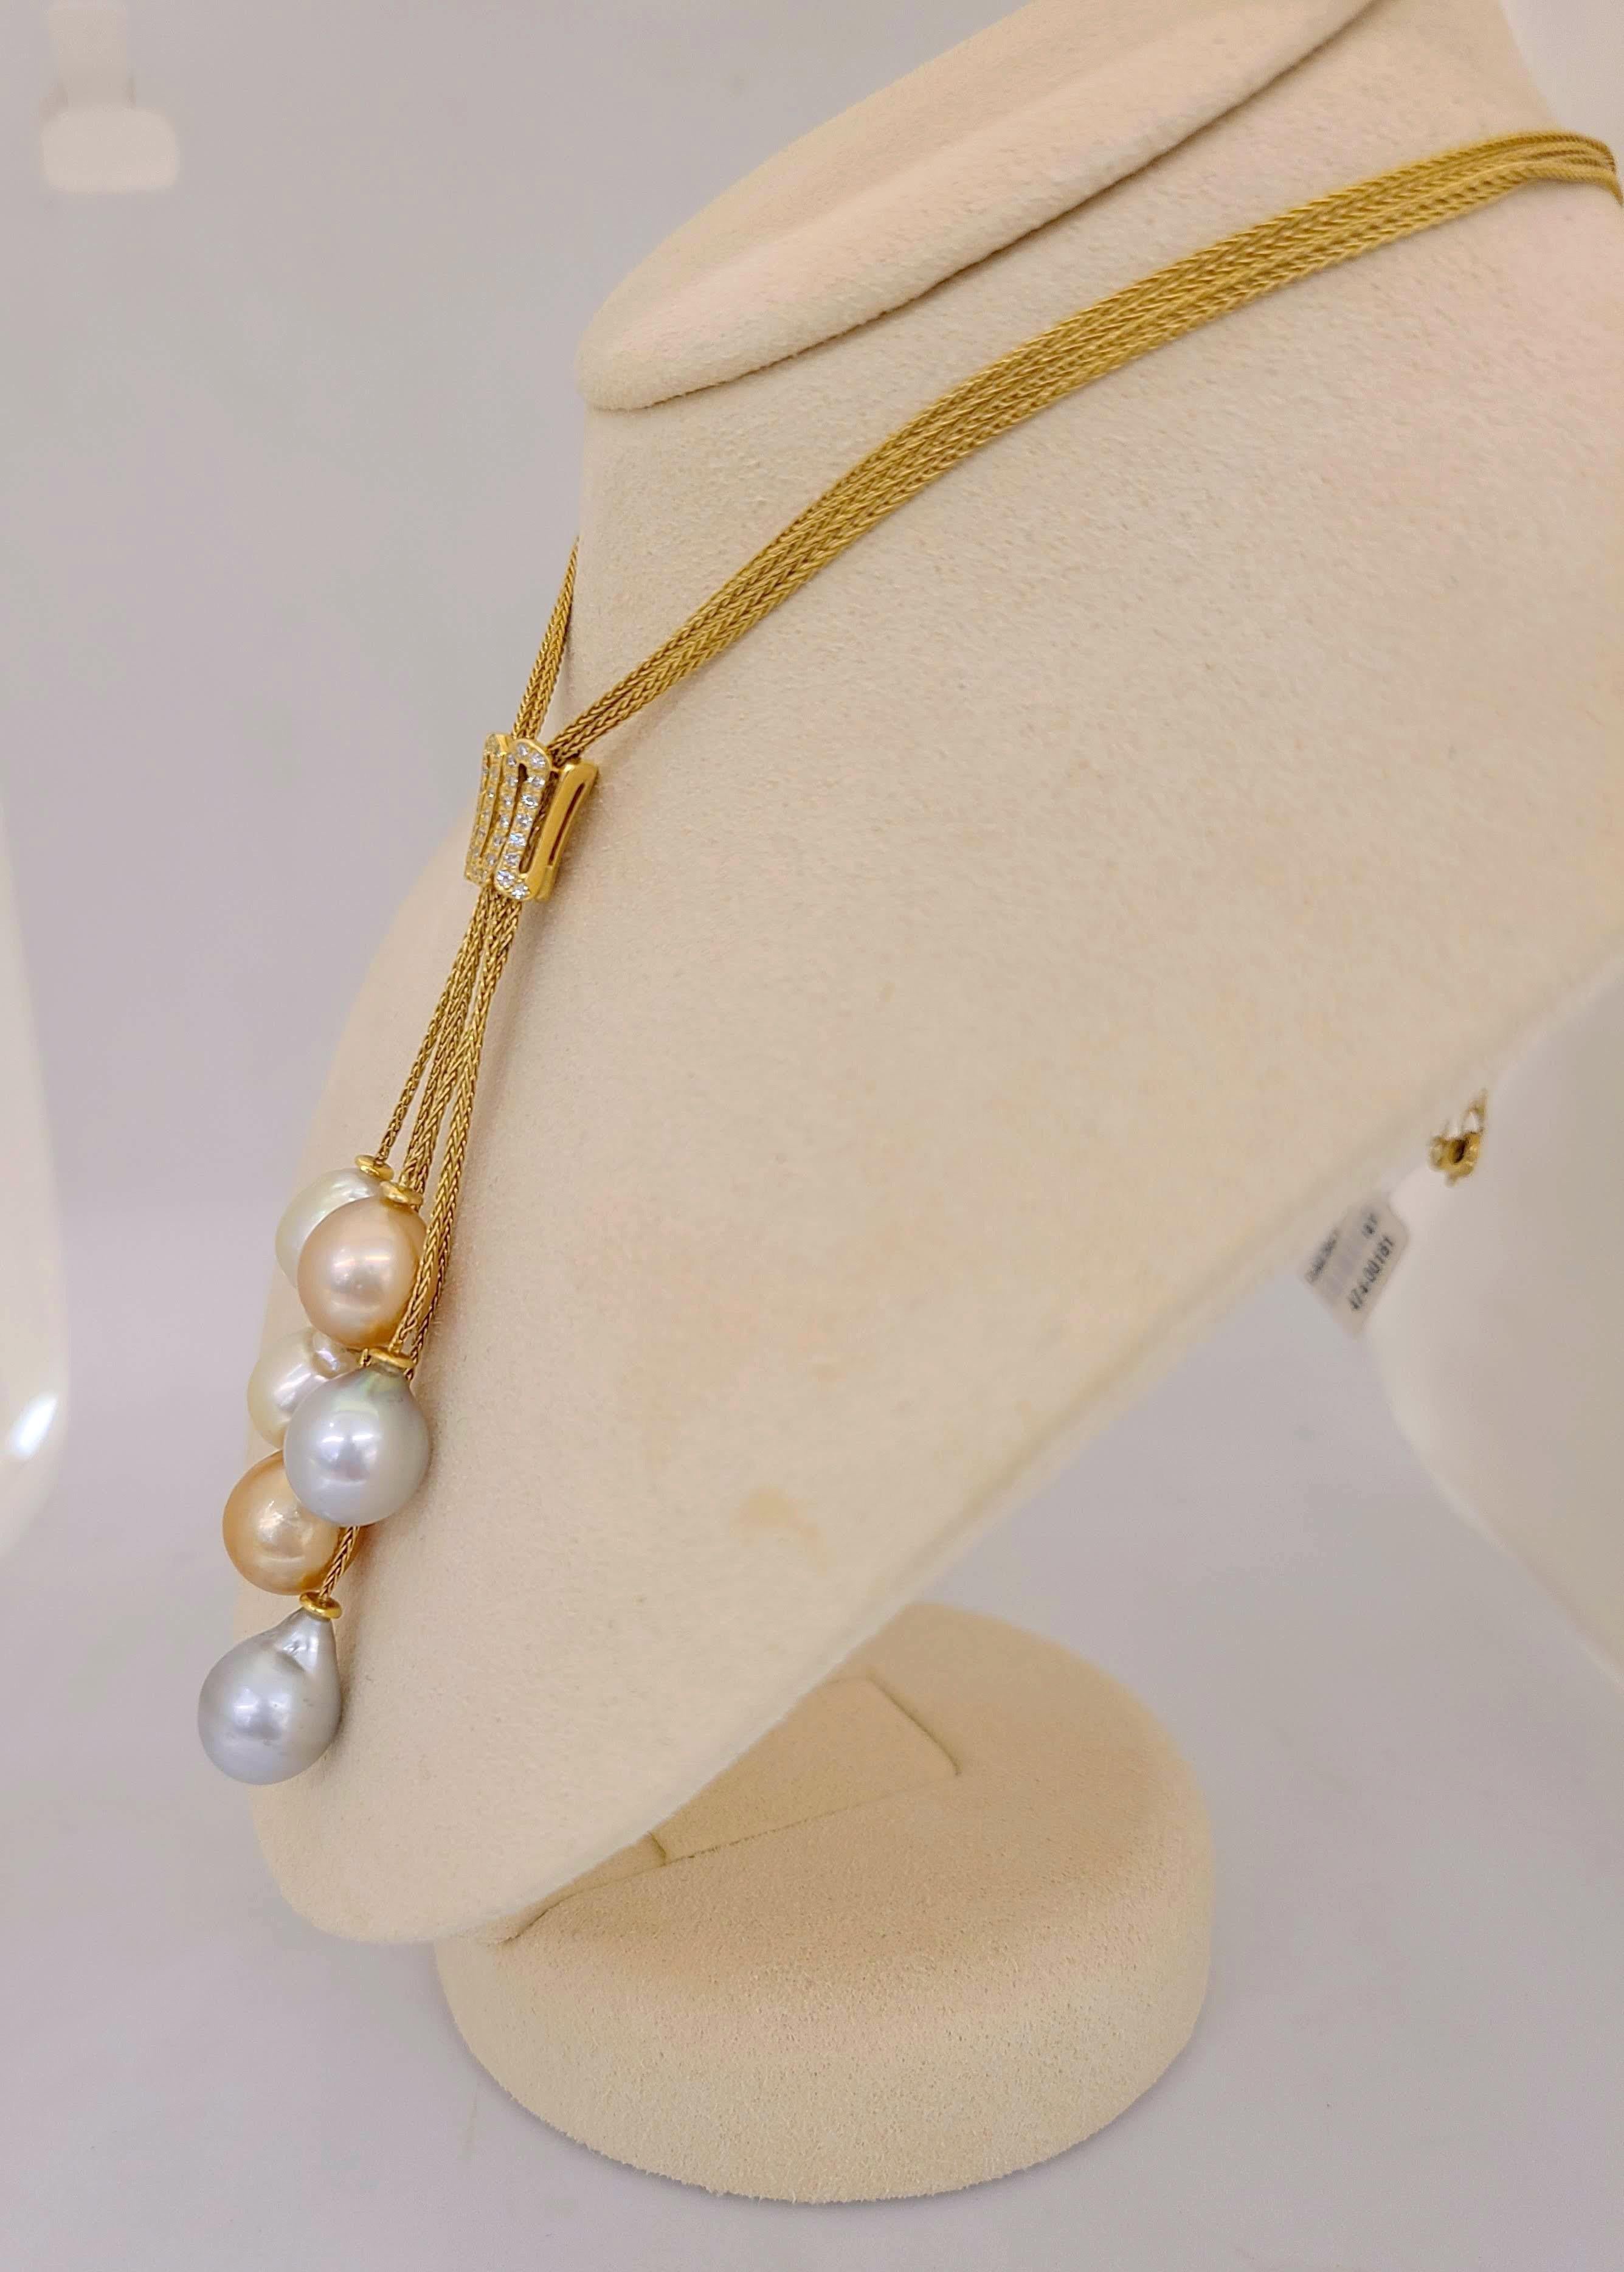 Seltene Bio-Perlen sind das Markenzeichen von Yvel. Cellini Jewelers NYC präsentiert seine 18-karätige Gelbgold-Halskette mit sechs mehrfarbigen tropfenförmigen Südseeperlen. Die 23